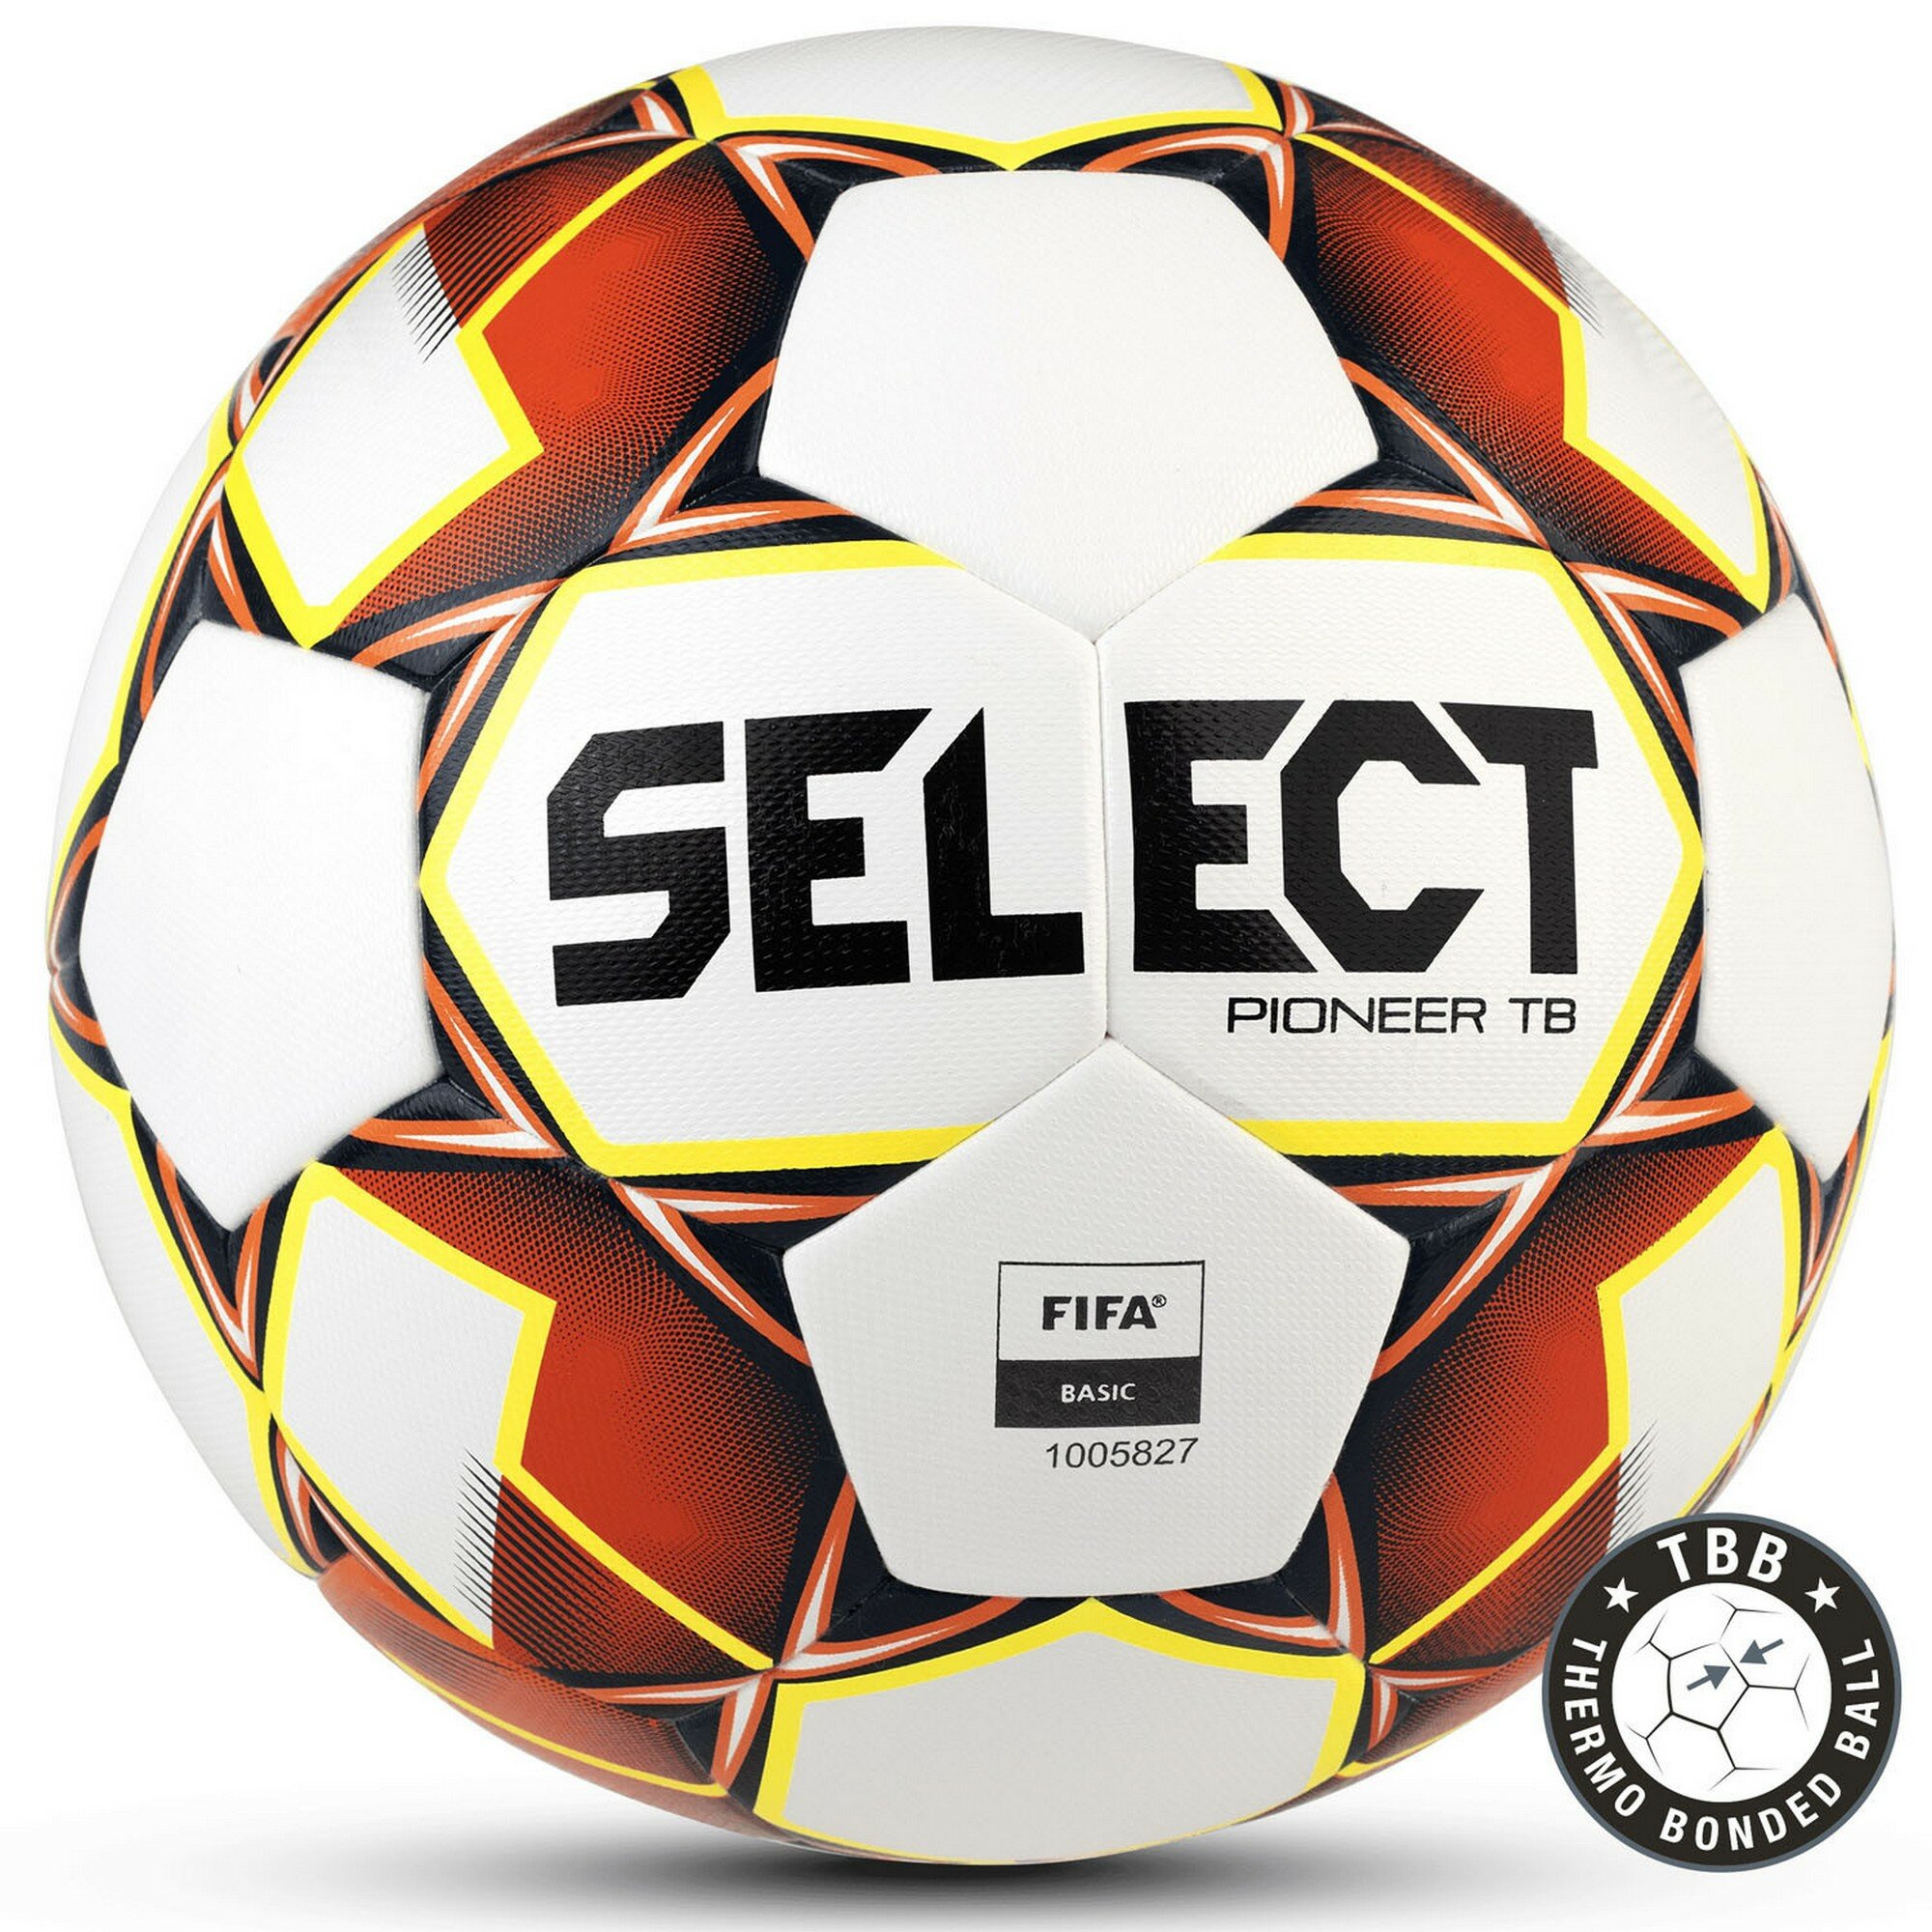 Футбольный мяч Select Pioneer TB, Fifa Basic, 4 размер